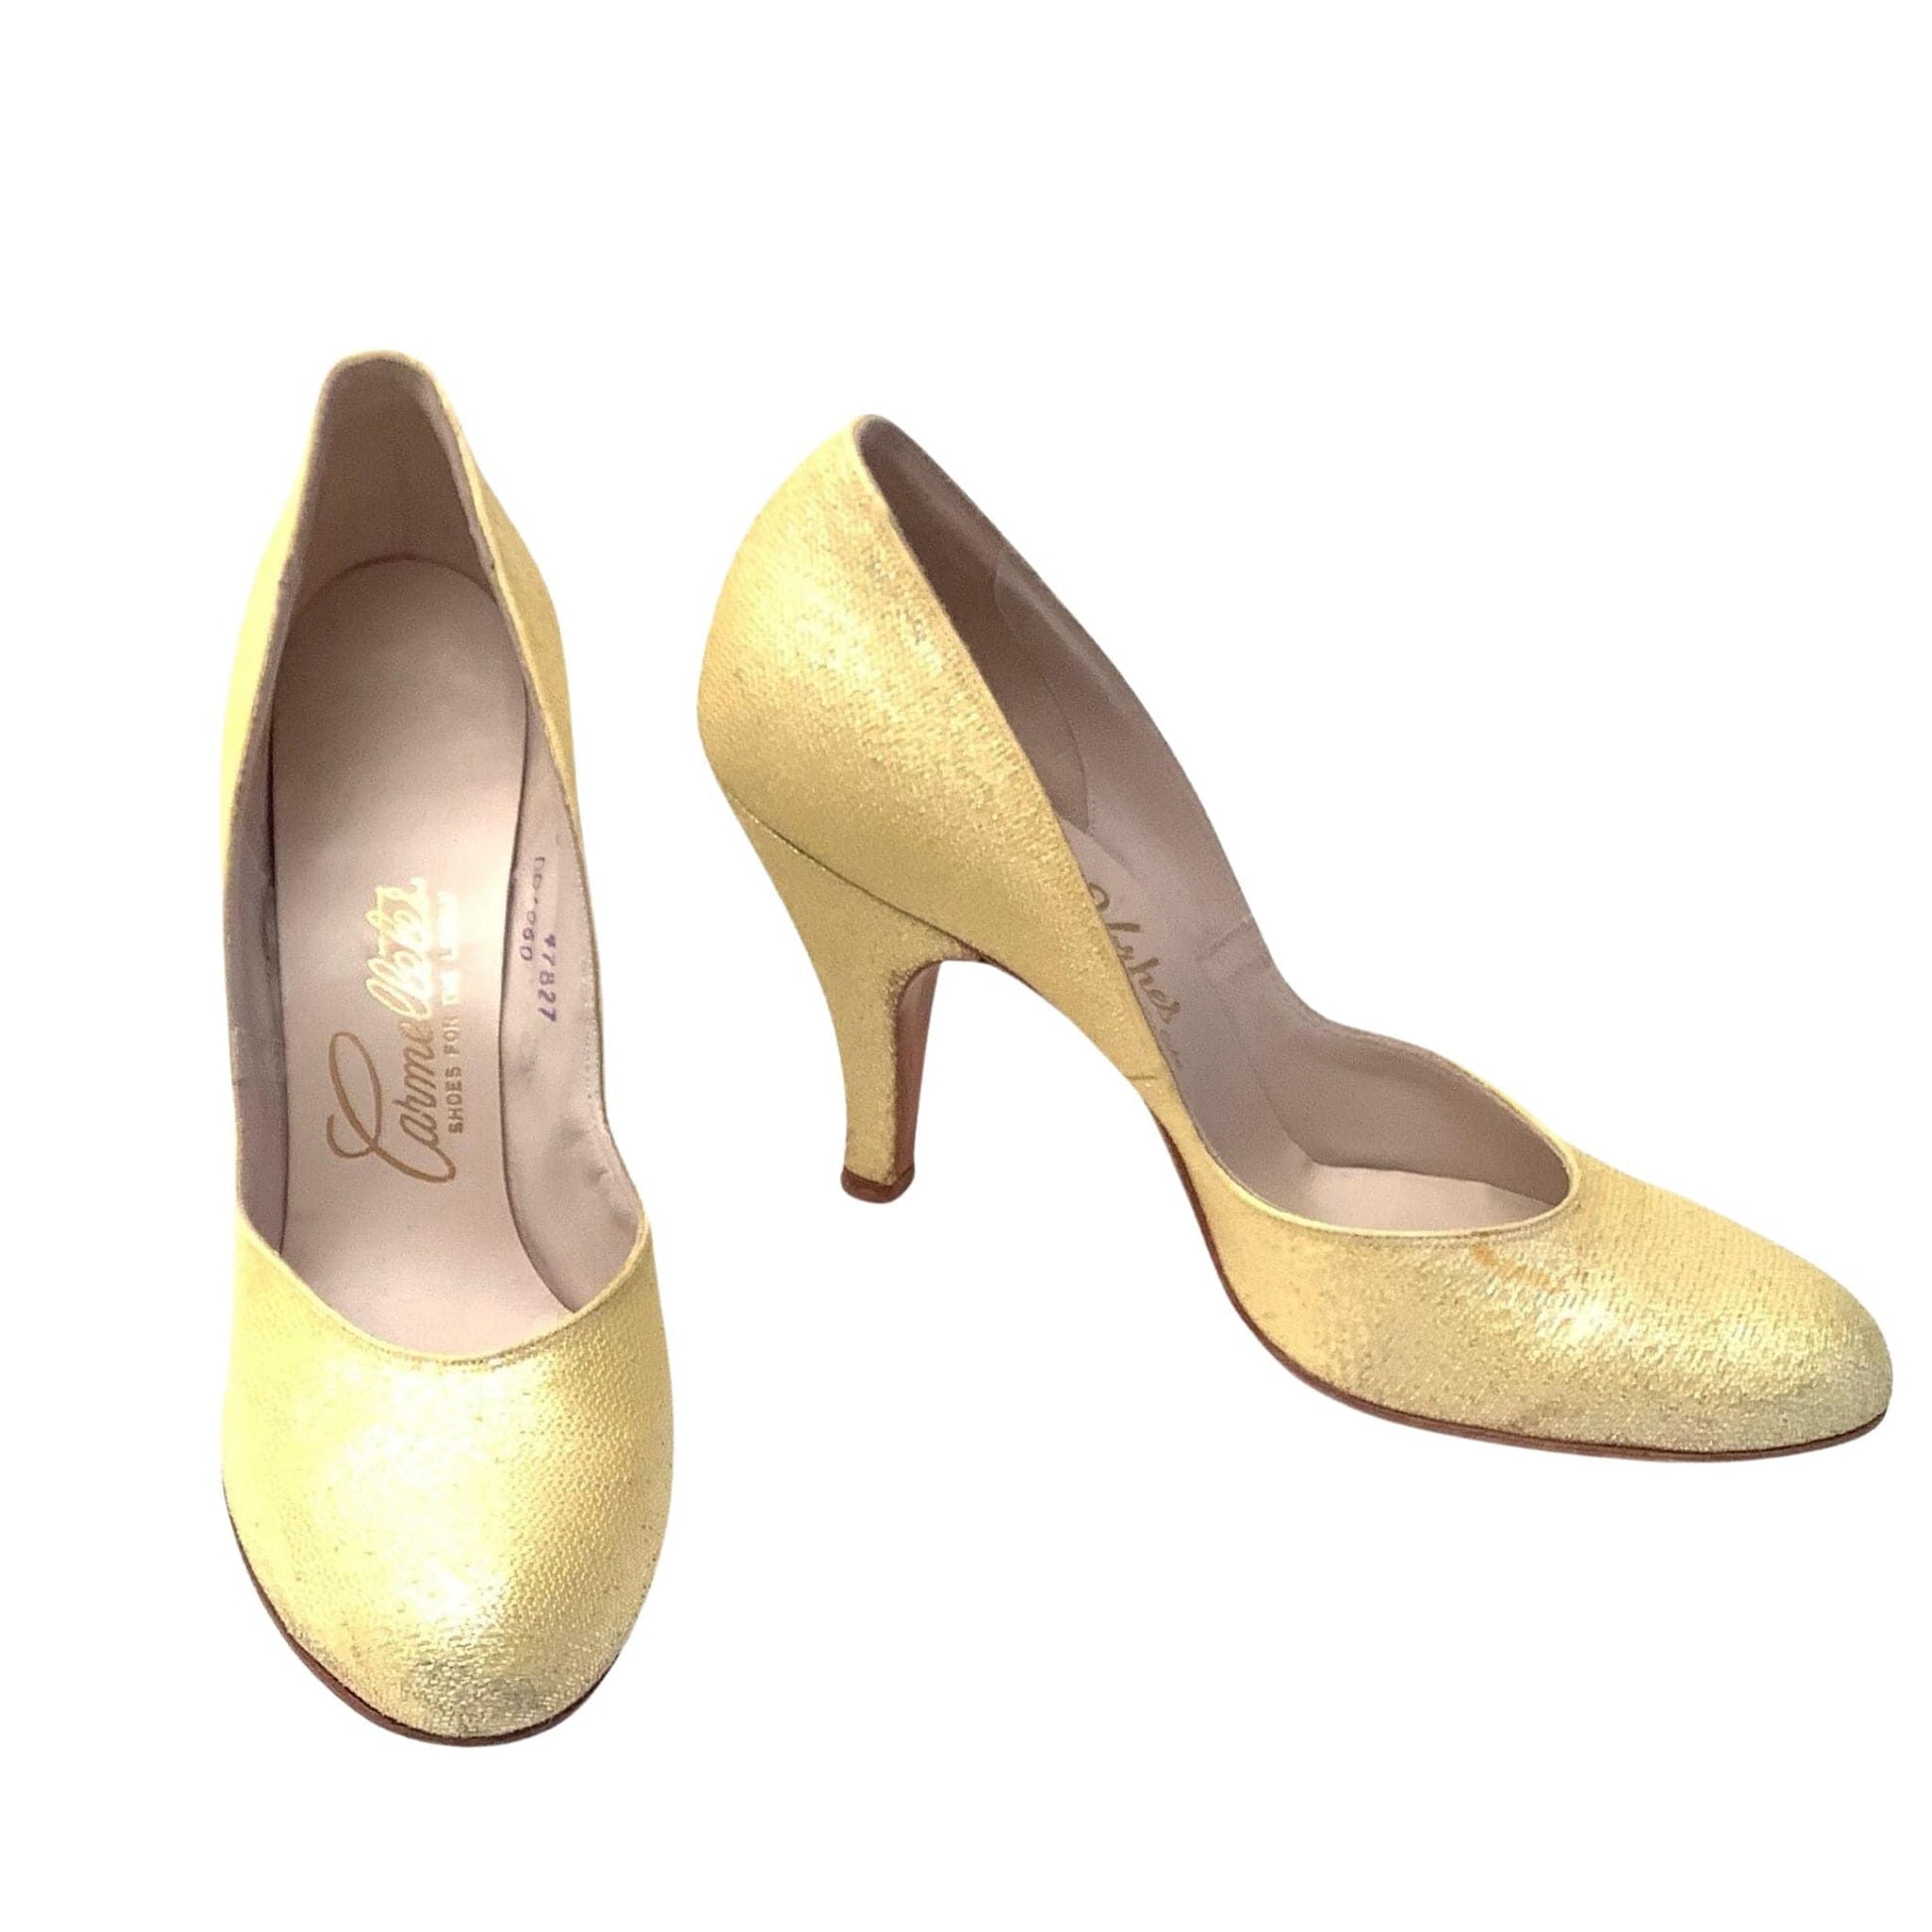 Buy Women Yellow Sandals Online - 873000 | Van Heusen